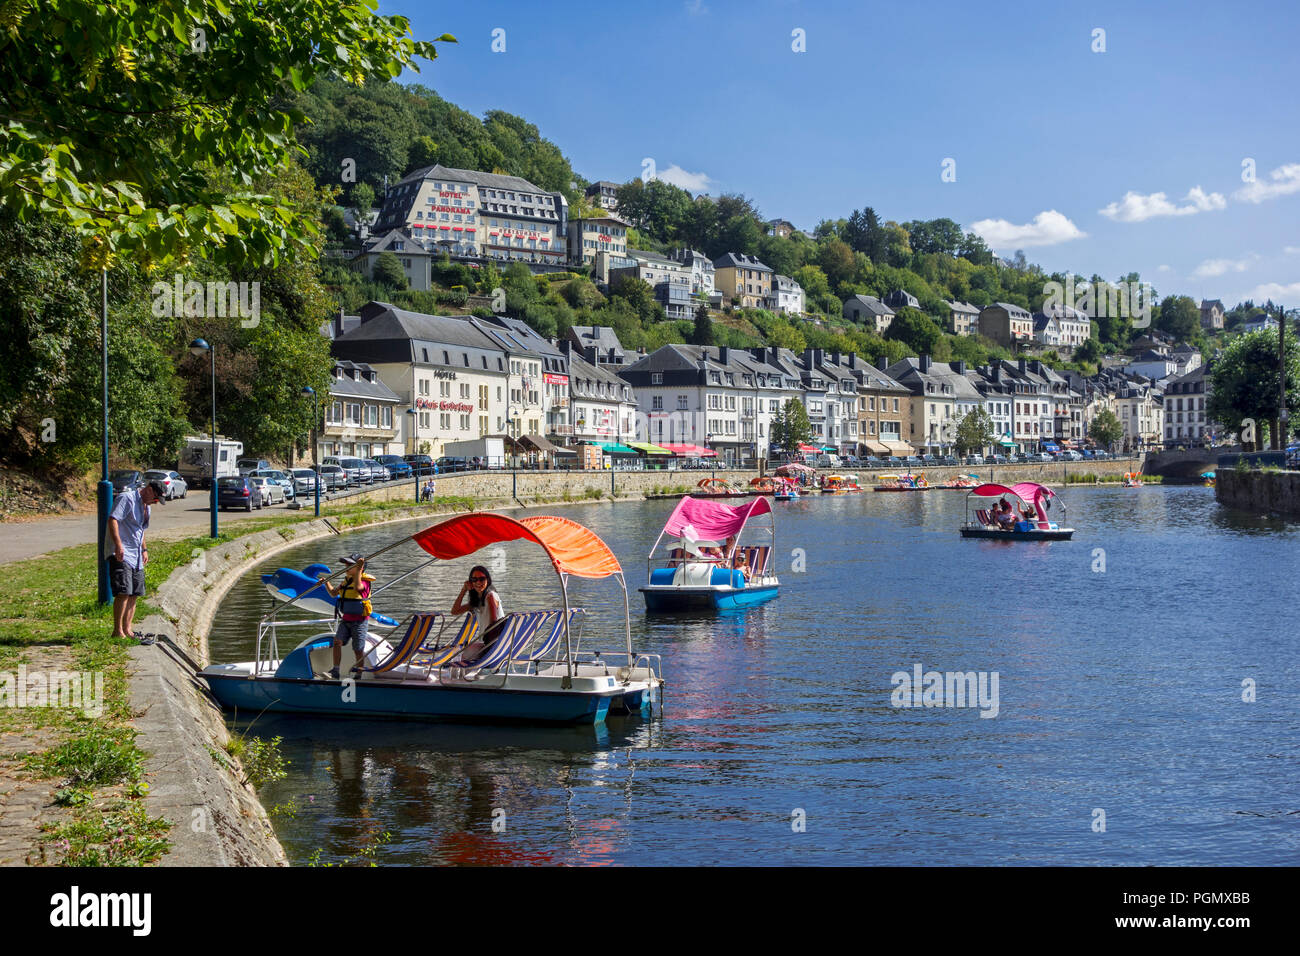 Des bateaux de touristes sur la Semois dans la ville Bouillon en été, Province du Luxembourg, Ardennes Belges, Belgique Banque D'Images